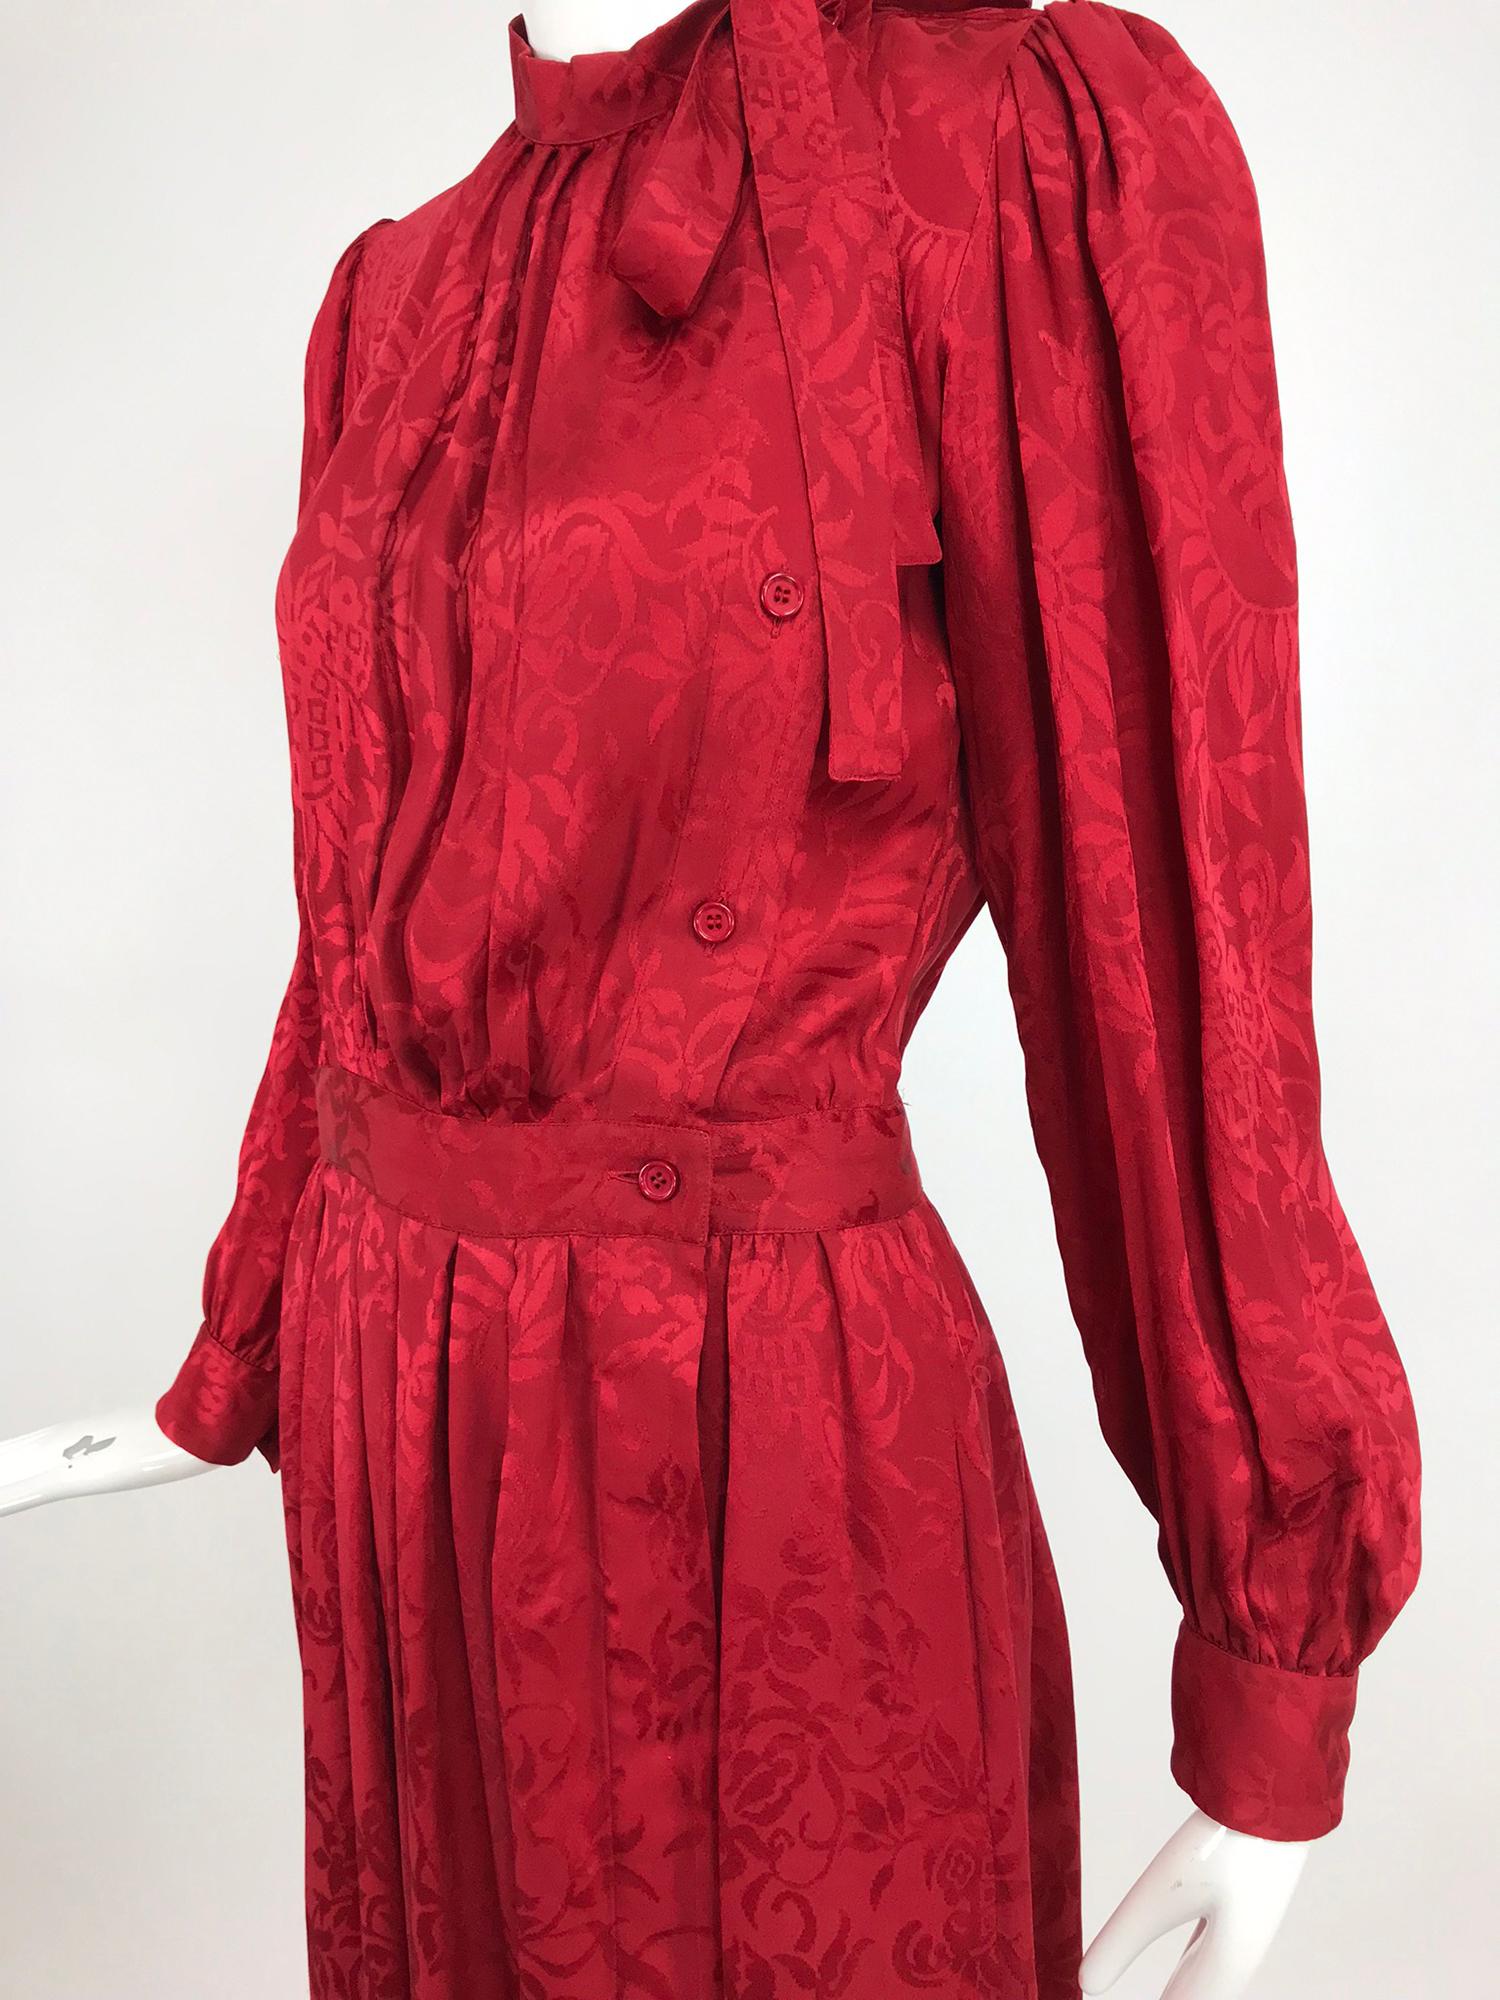 Yves Saint Laurent - Robe en jacquard de soie rouge avec nœud papillon, années 1970 12